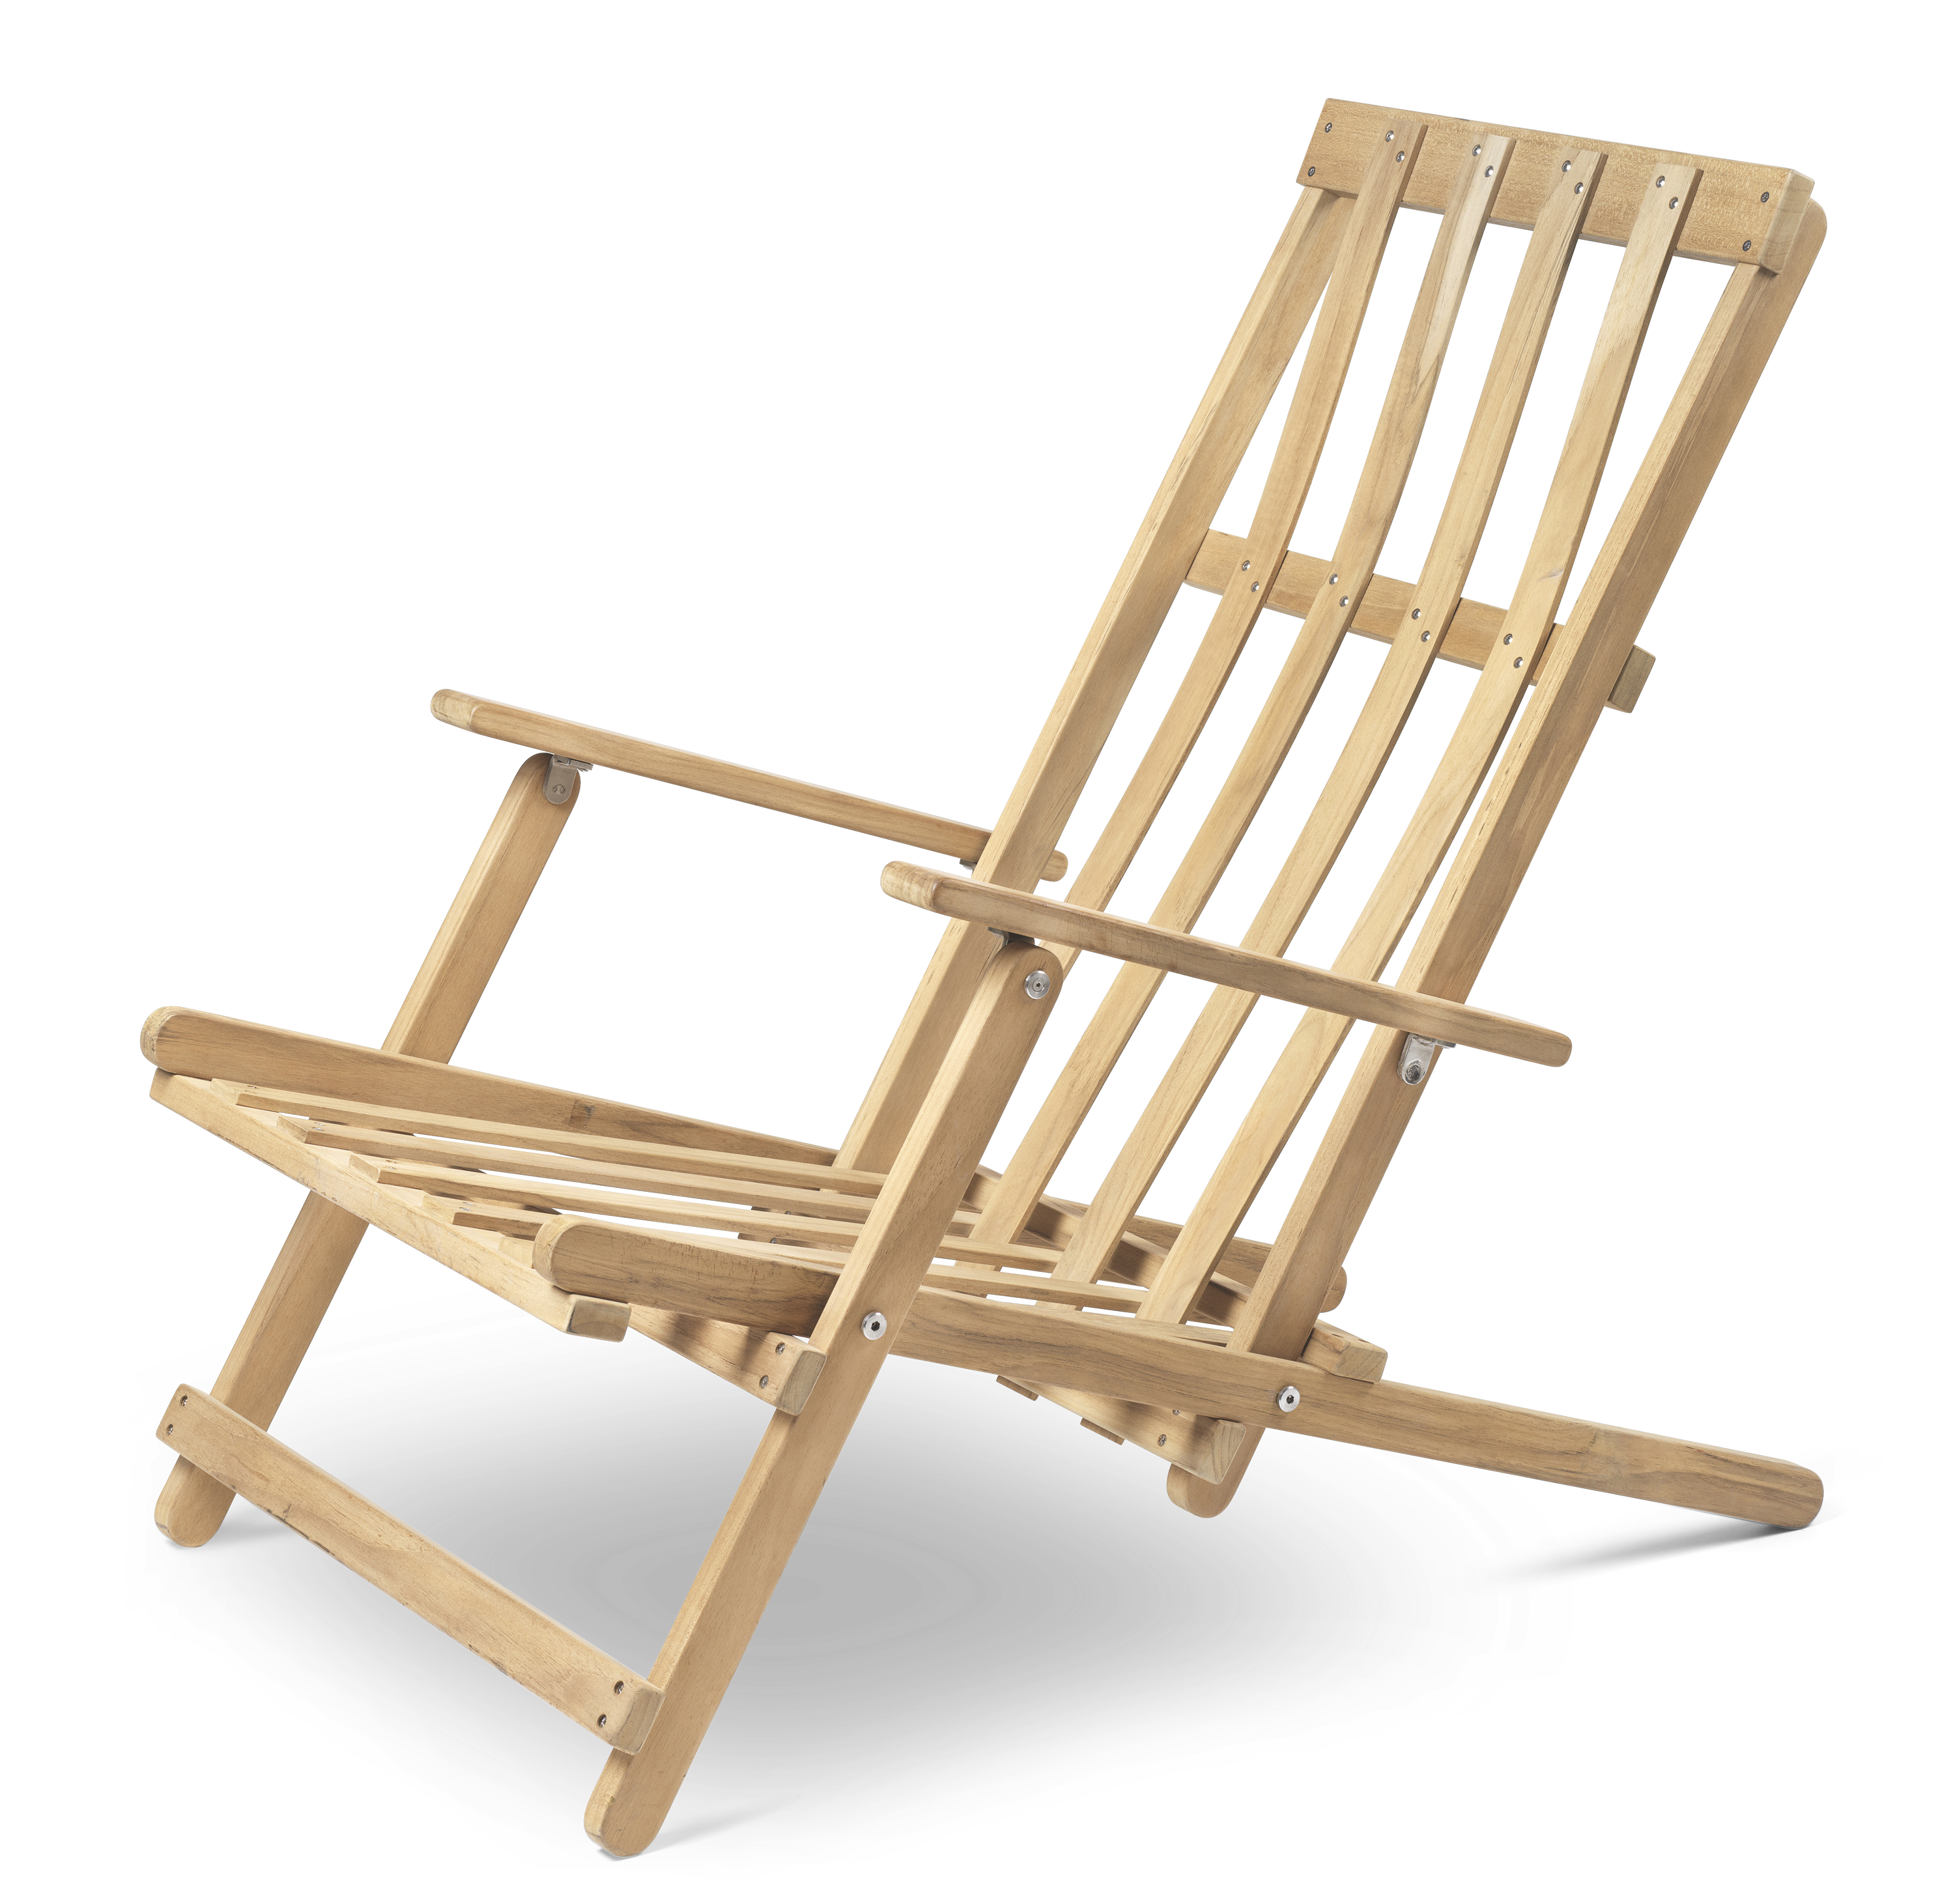 Bm5568 Deck Chair By Borge Mogense Carl Hansen Son